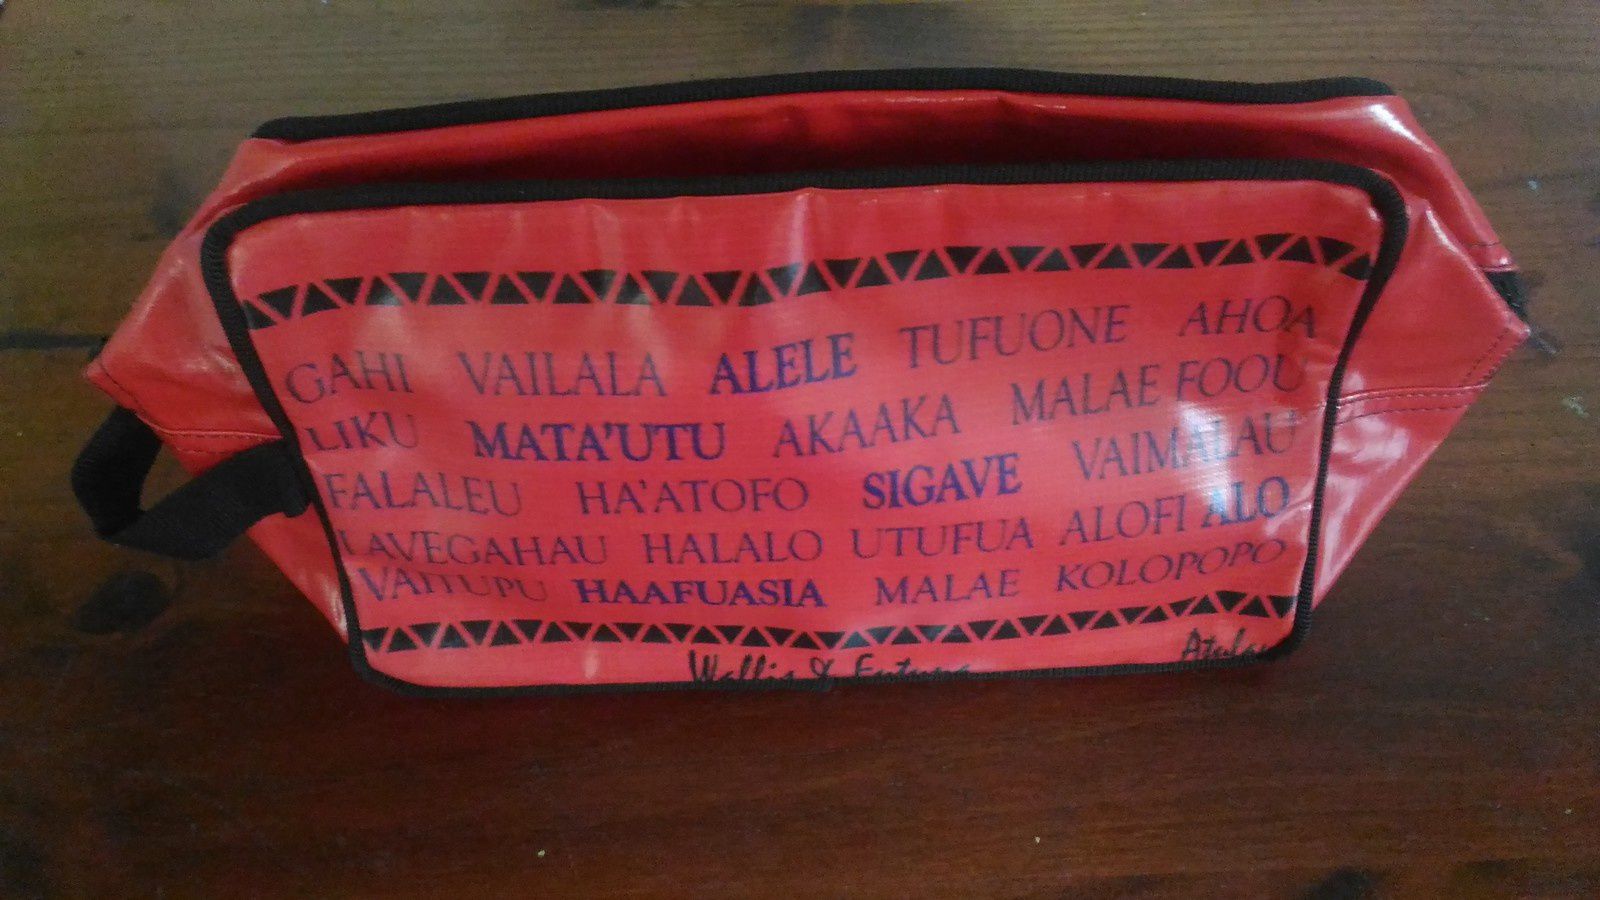 Une trousse de toilette " made for Wallis et Futuna "